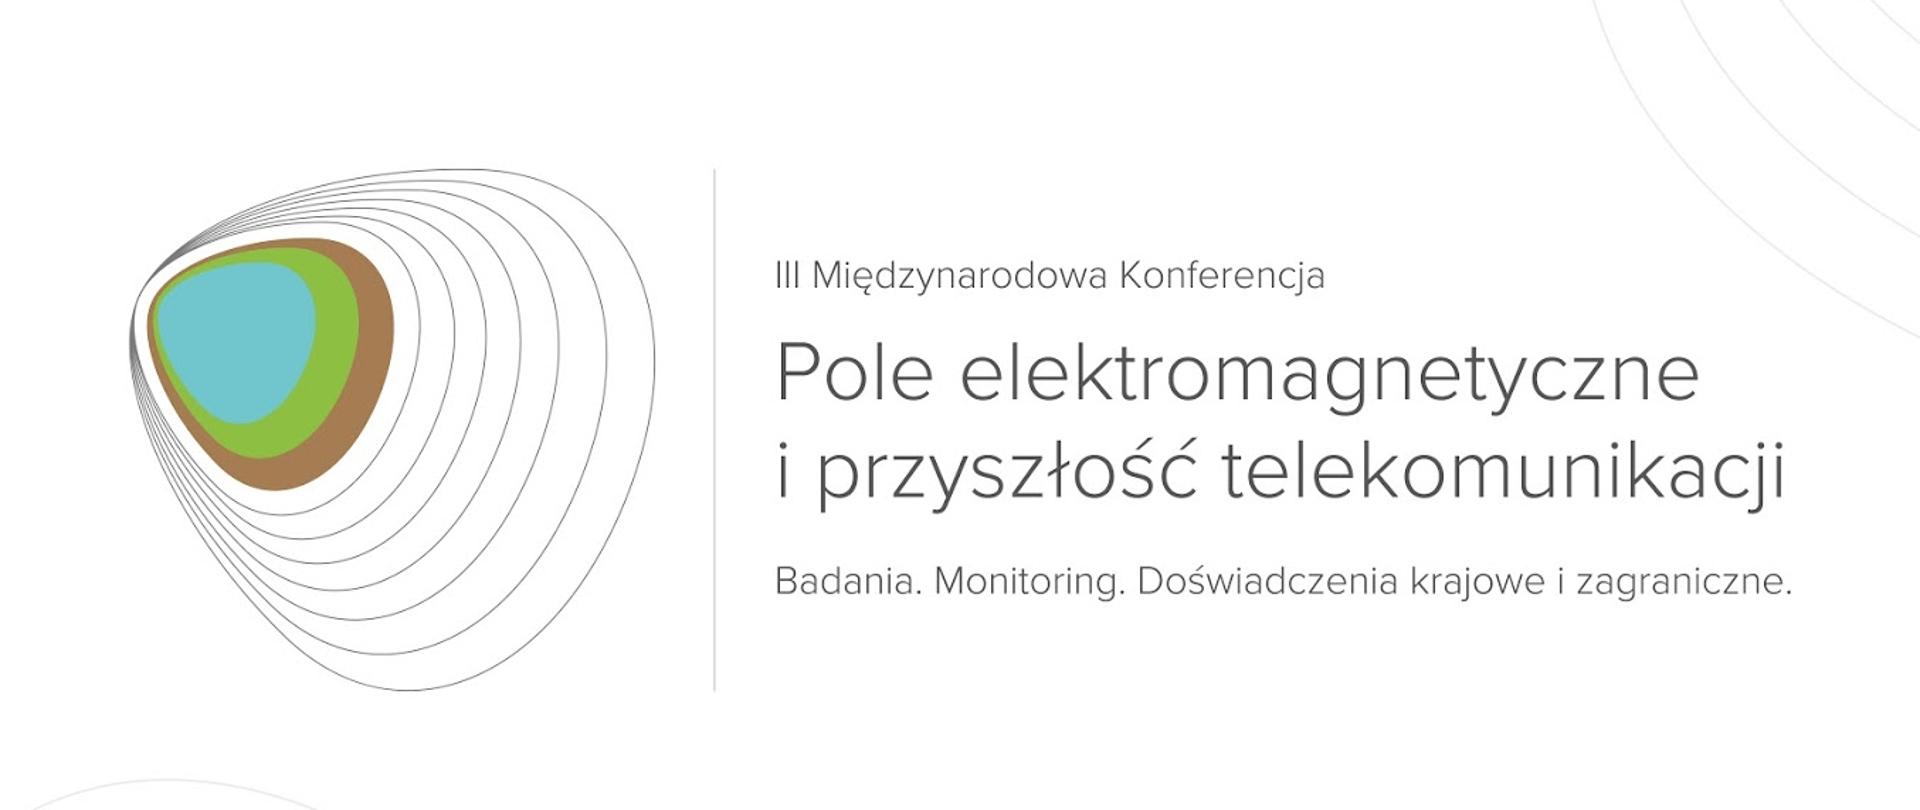 Logo i nazwa konferencji Pole elektromagnetyczne i przyszłość telekomunikacji. Badania. Monitoring. Doświadczenia krajowe i zagraniczne.